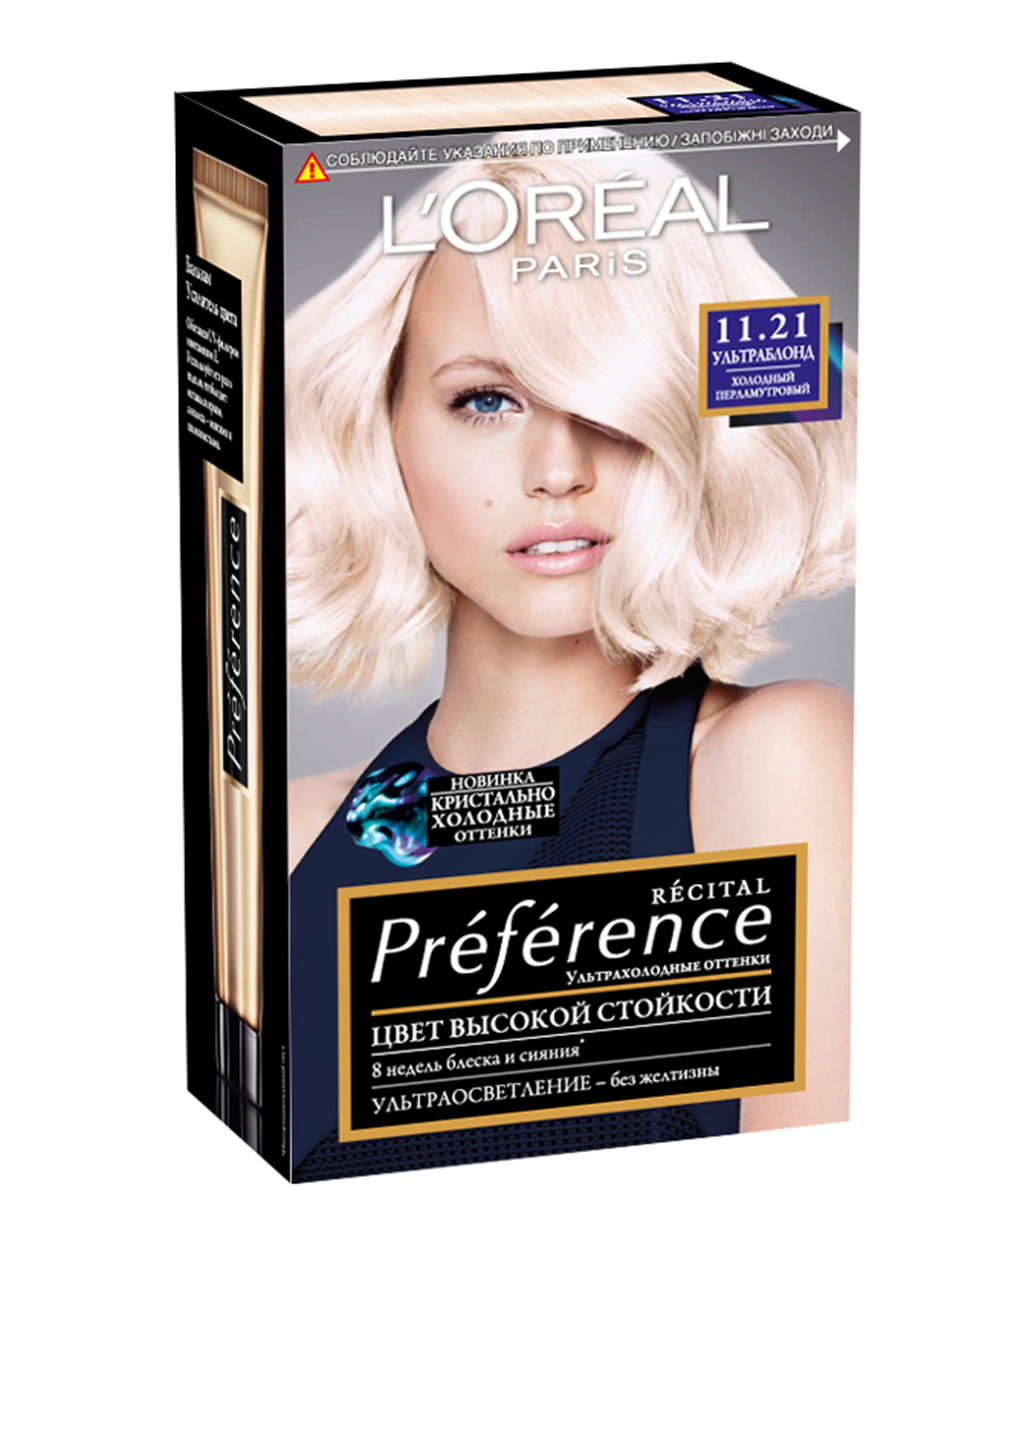 Краска для волос Preference оттенок 11.21 ультраблонд холодный перламутровый (3 пр.) L'Oreal Paris (96593857)